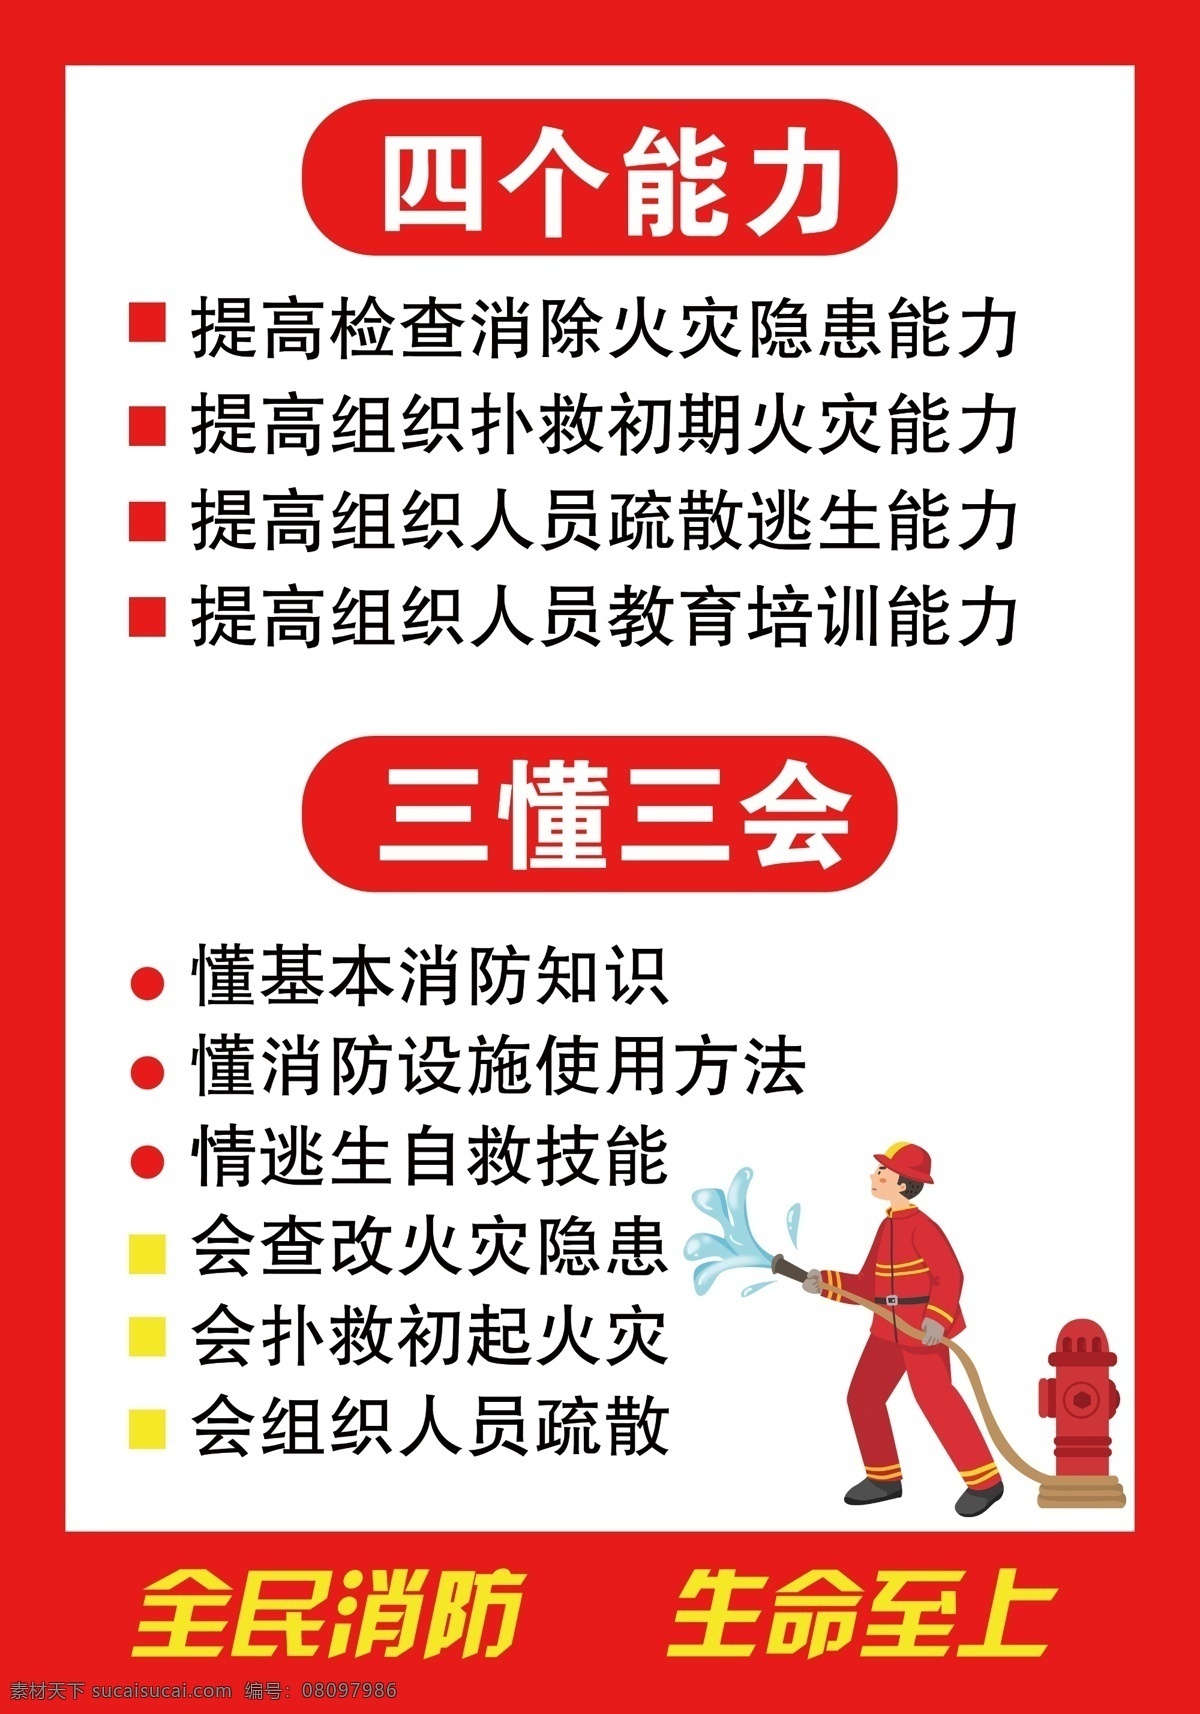 消防安全 四个能力 三懂三会 全民消防 生命安全 安全生产